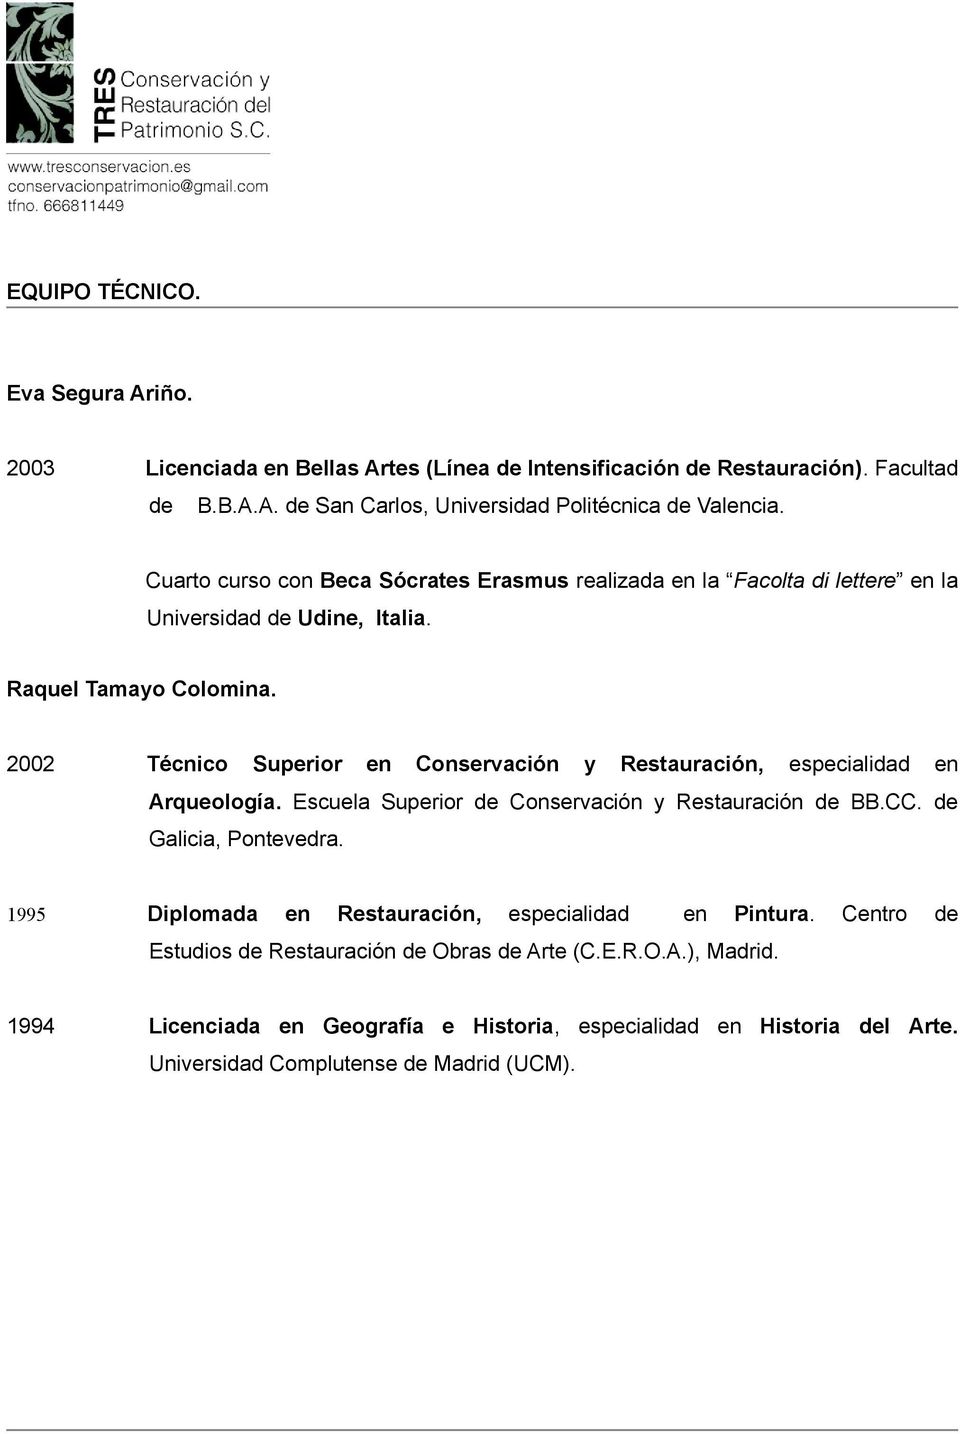 2002 Técnico Superior en Conservación y Restauración, especialidad en Arqueología. Escuela Superior de Conservación y Restauración de BB.CC. de Galicia, Pontevedra.